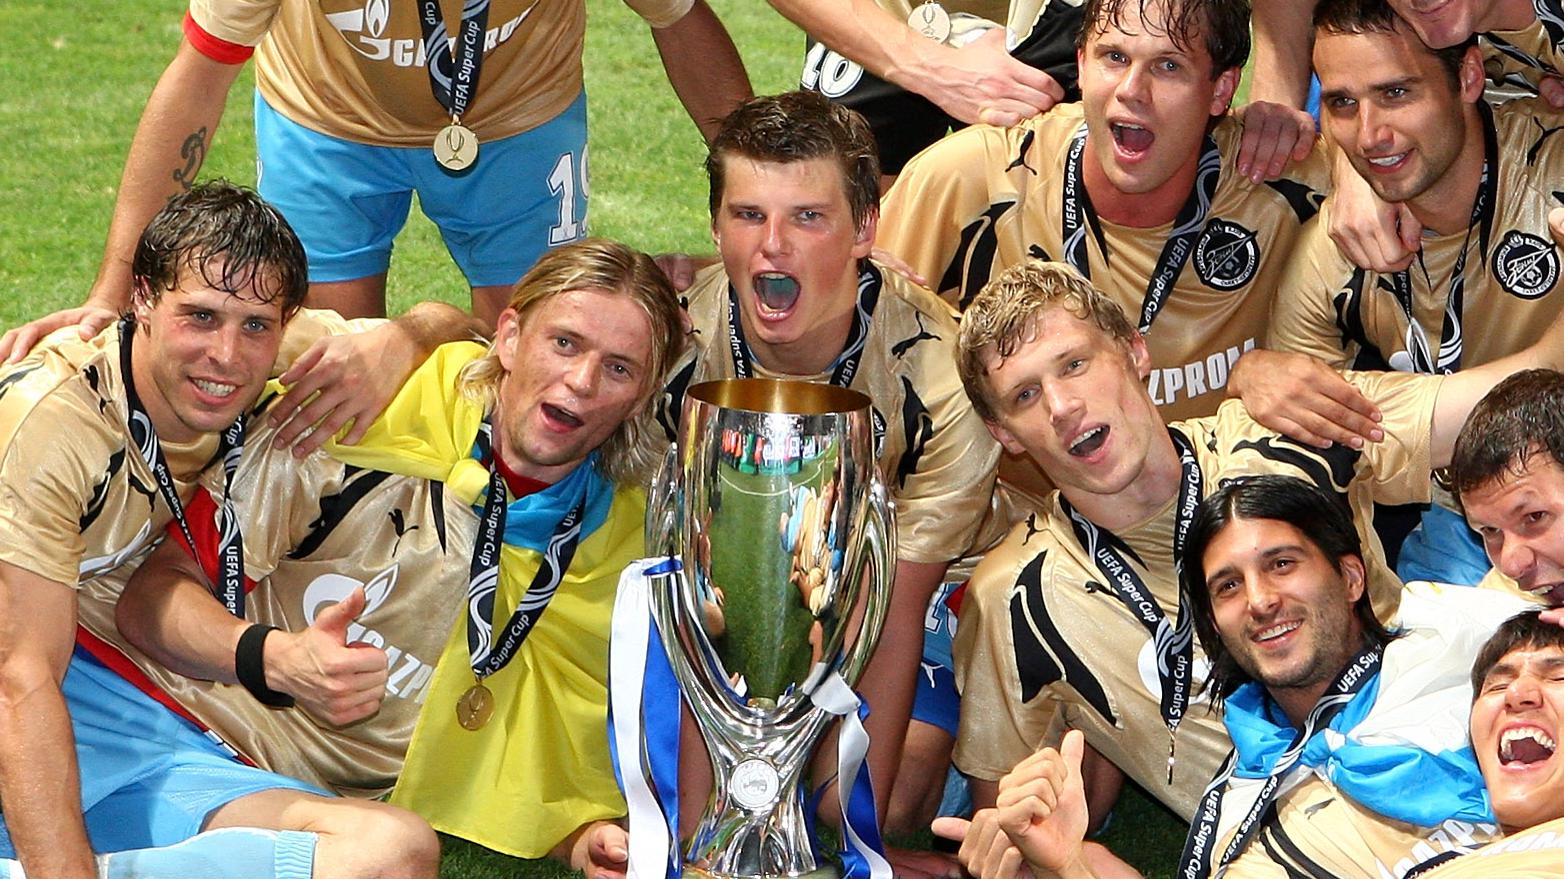 UEFA SUPER CUP 2008 Manchester United v Zenit St Petersburg 